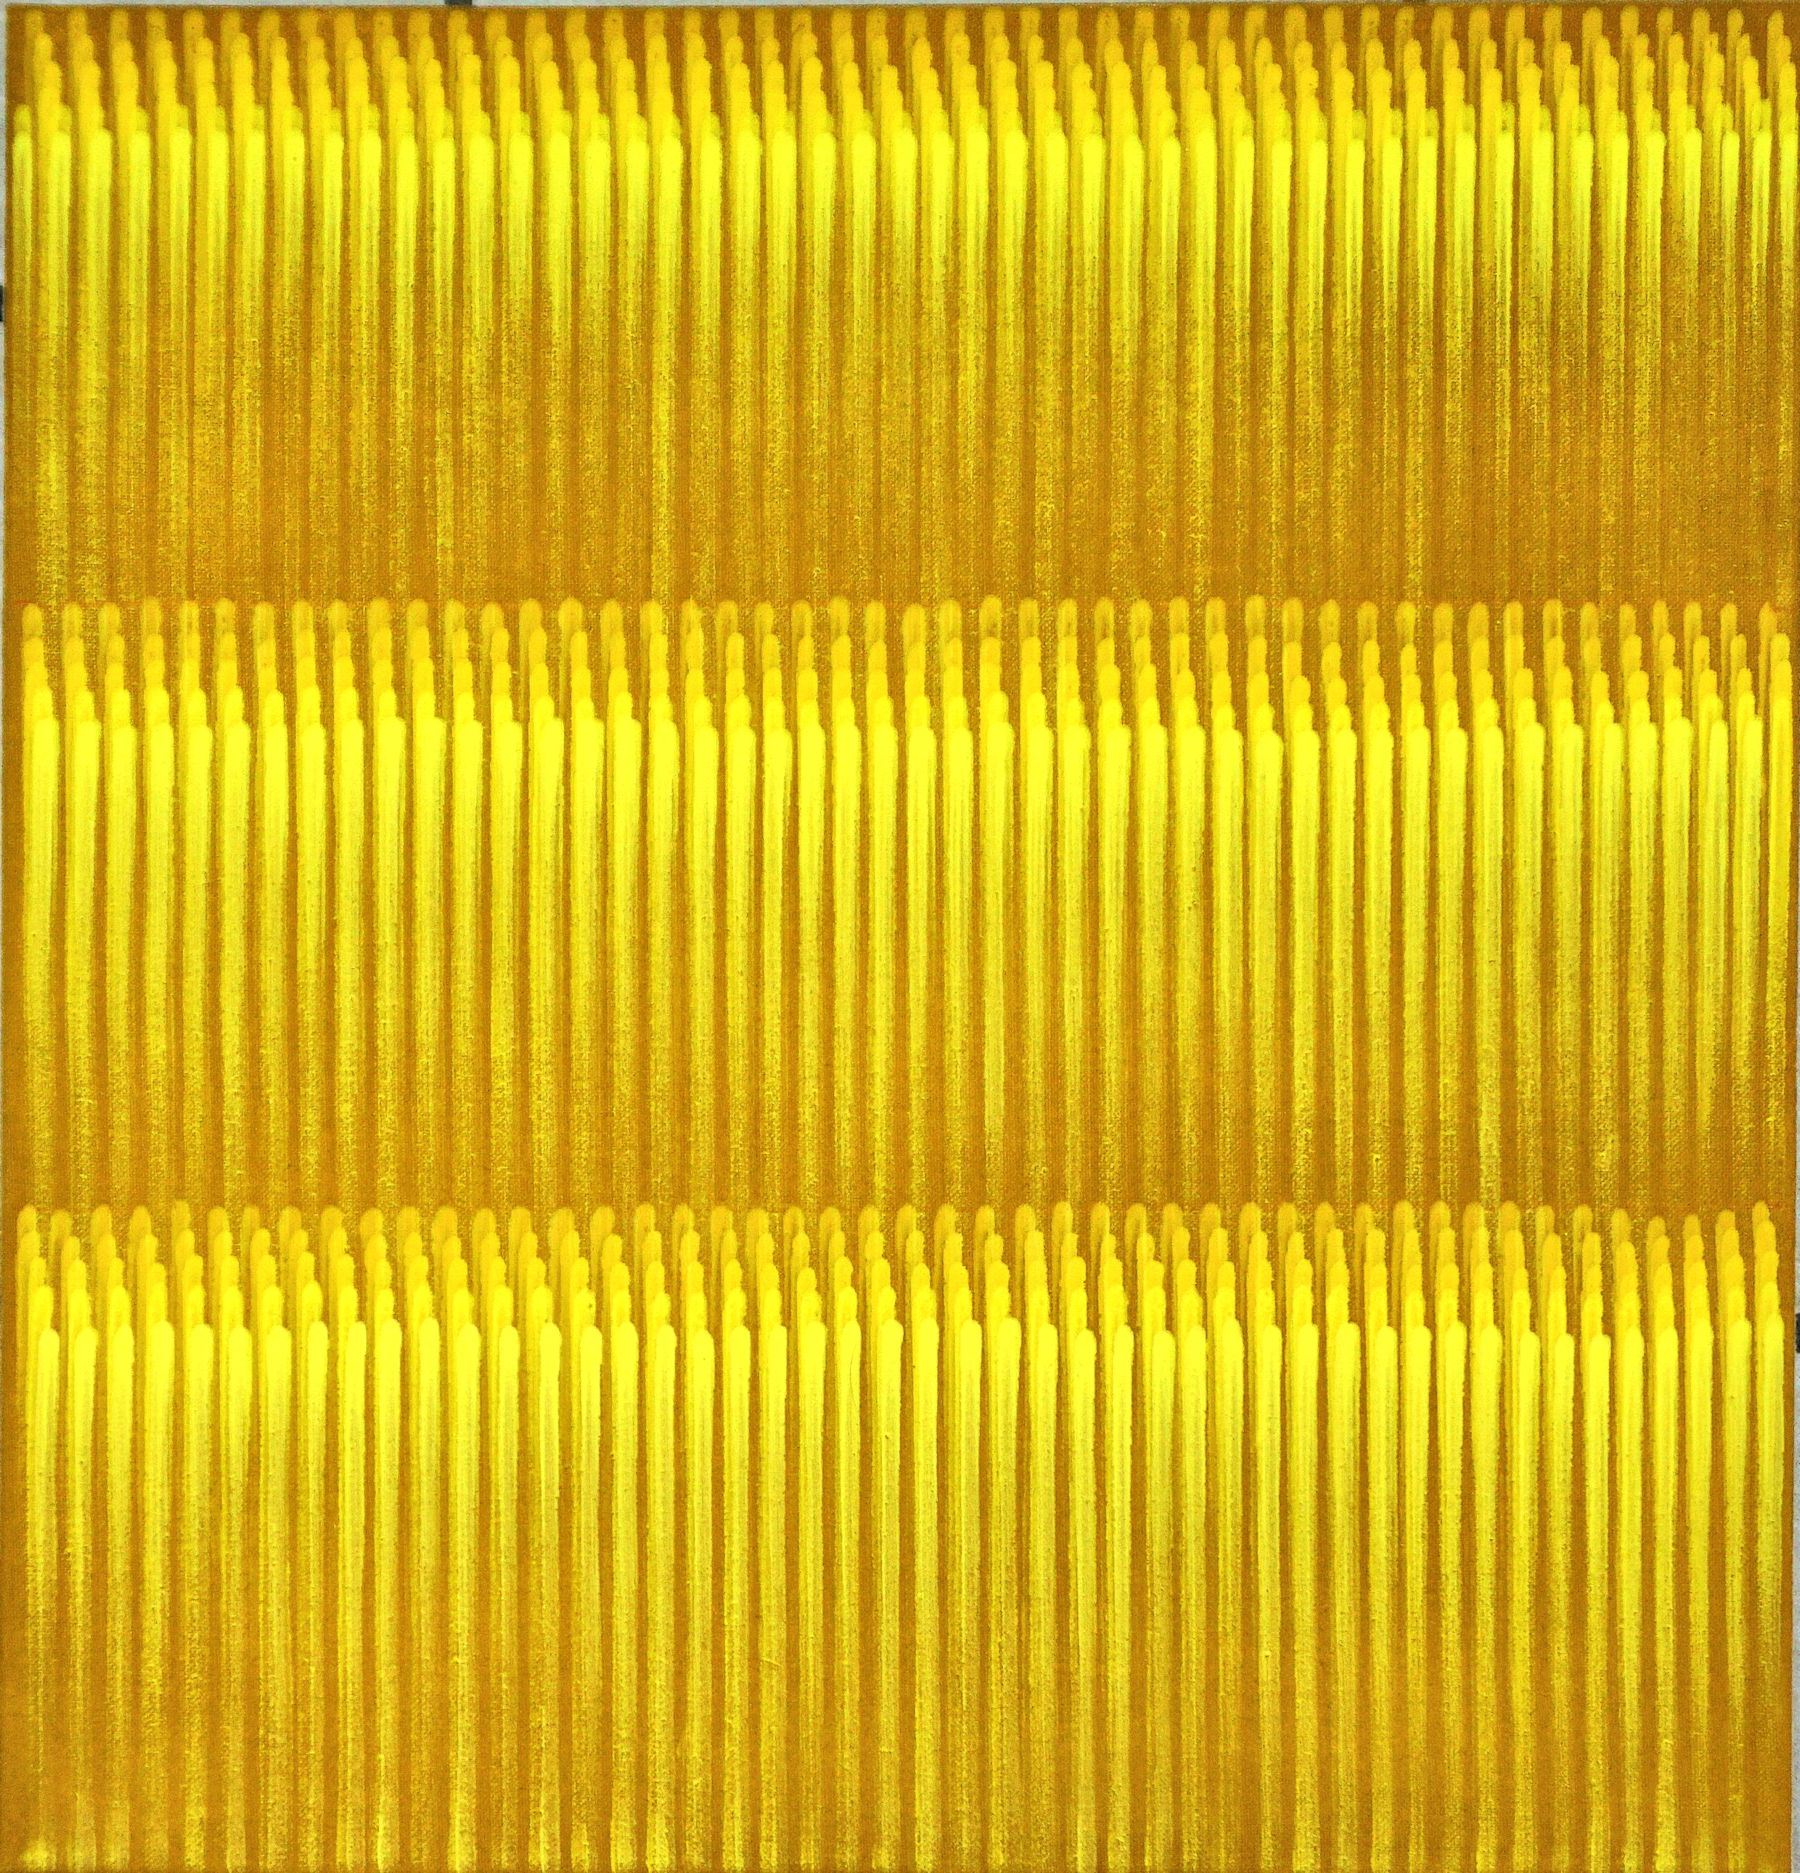 Galerie Erdel | Astrid Schröder: Linienbild monochrom gelb